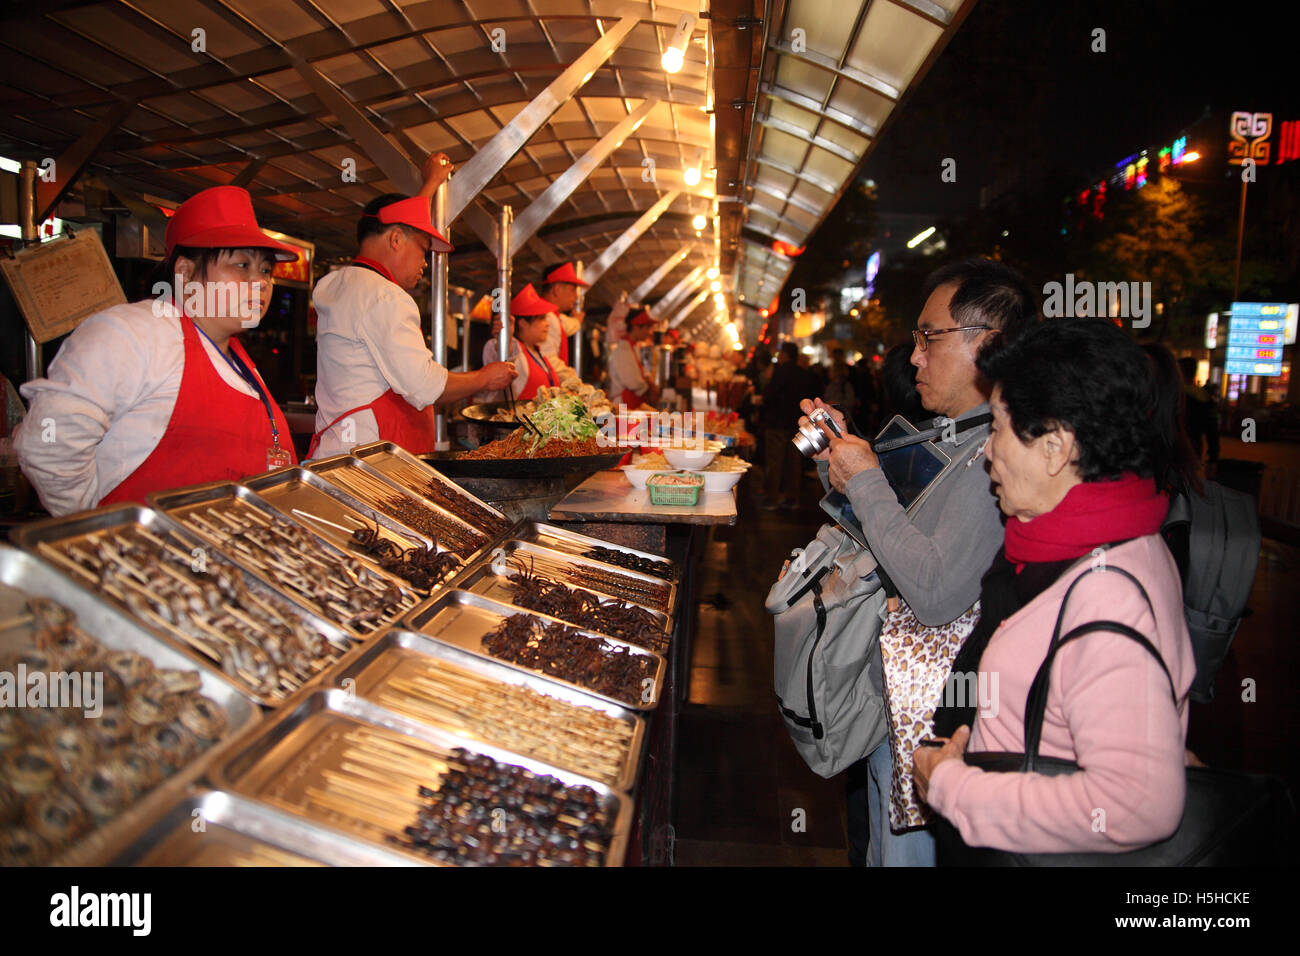 Un couple de touristes chinois, arrêter par un stand de restauration rapide avec brochette de viande, le mari utilise son appareil photo pour prendre des photos. Banque D'Images